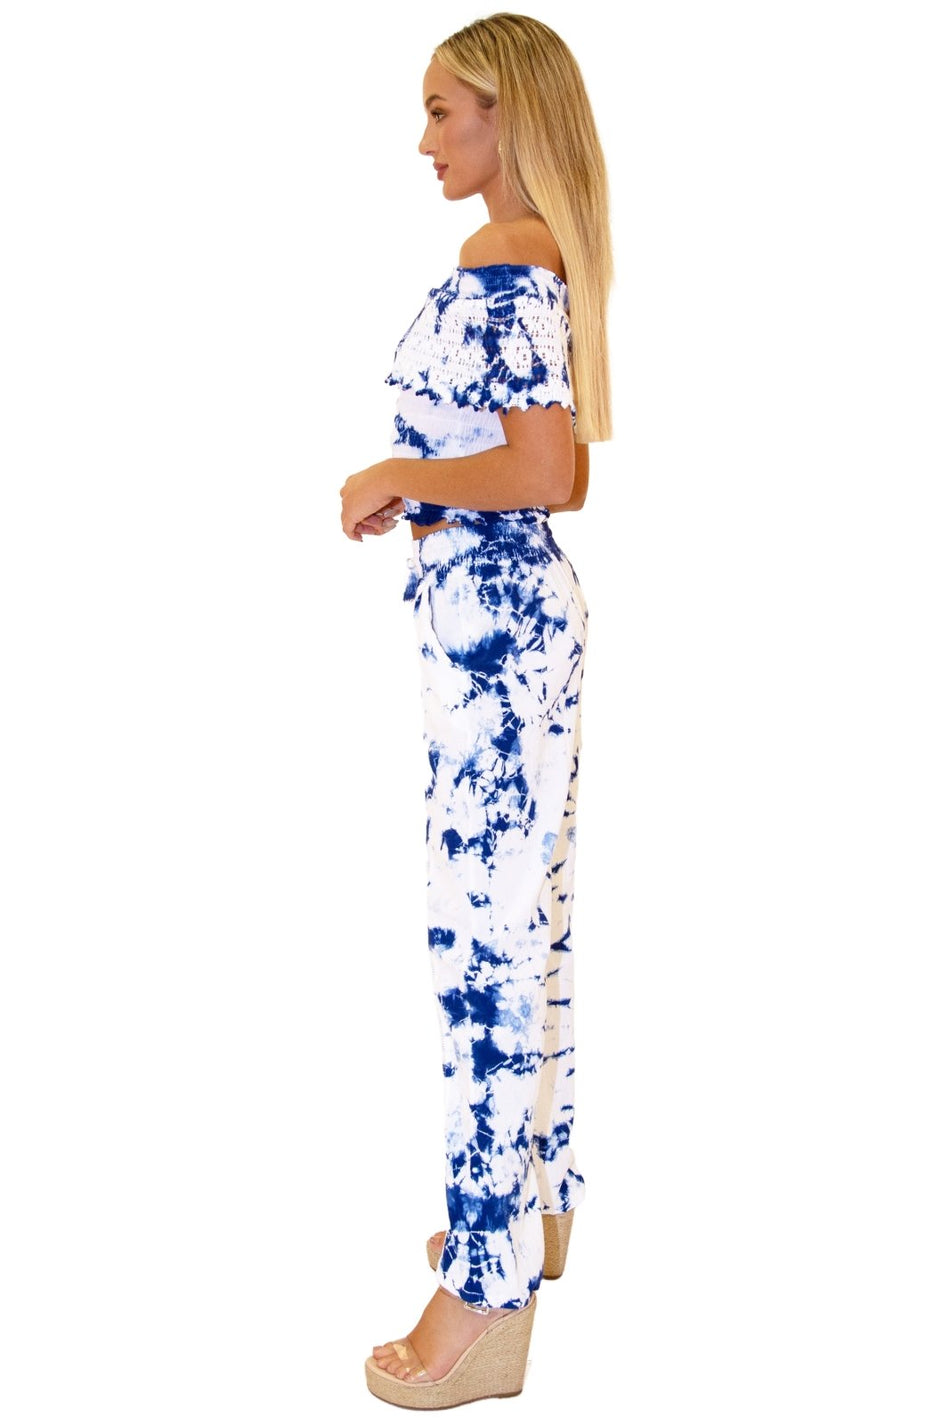 Magnolia' Crochet Front Detail Pants Tie Dye Blue - Seaspice Resort Wear